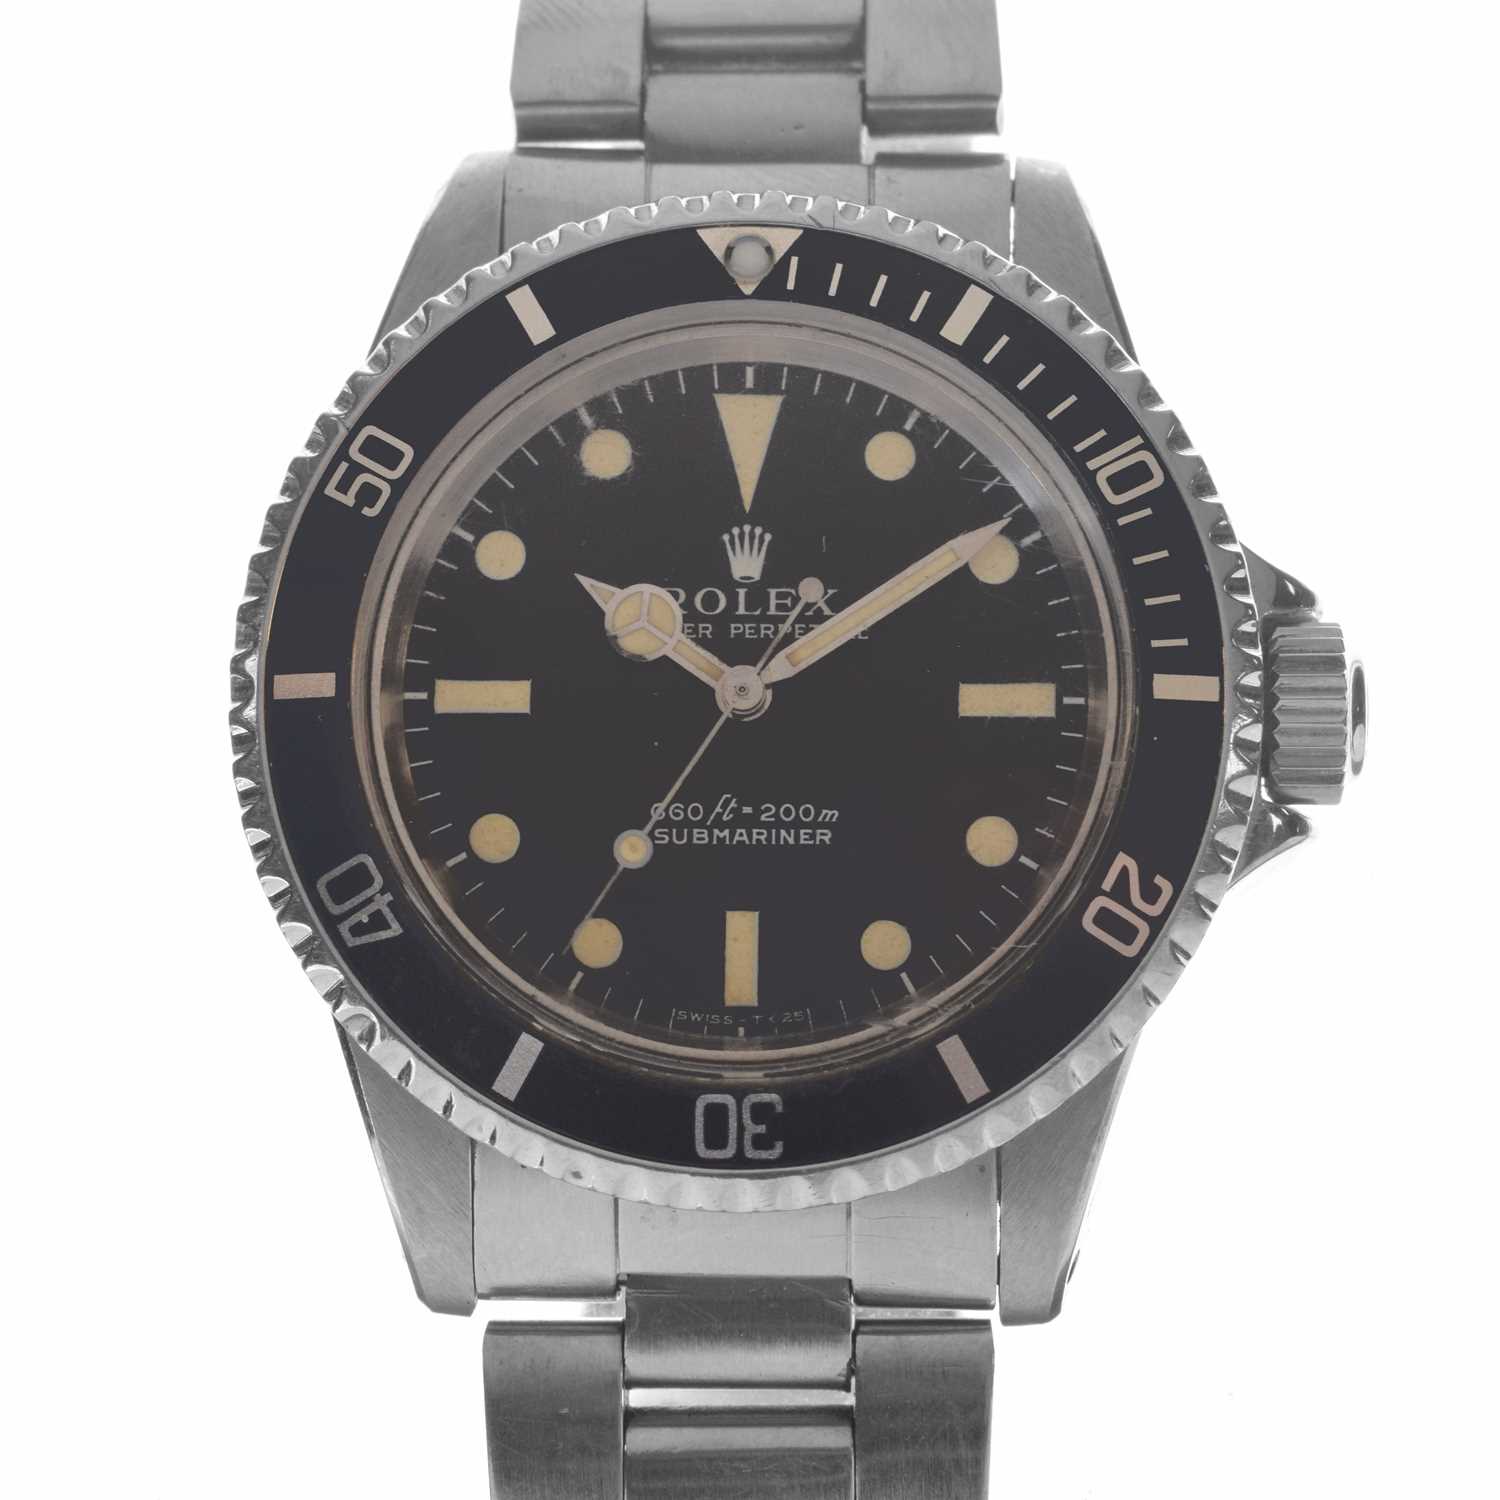 Rolex - Gentleman's Oyster Perpetual Submariner wristwatch, ref.5513